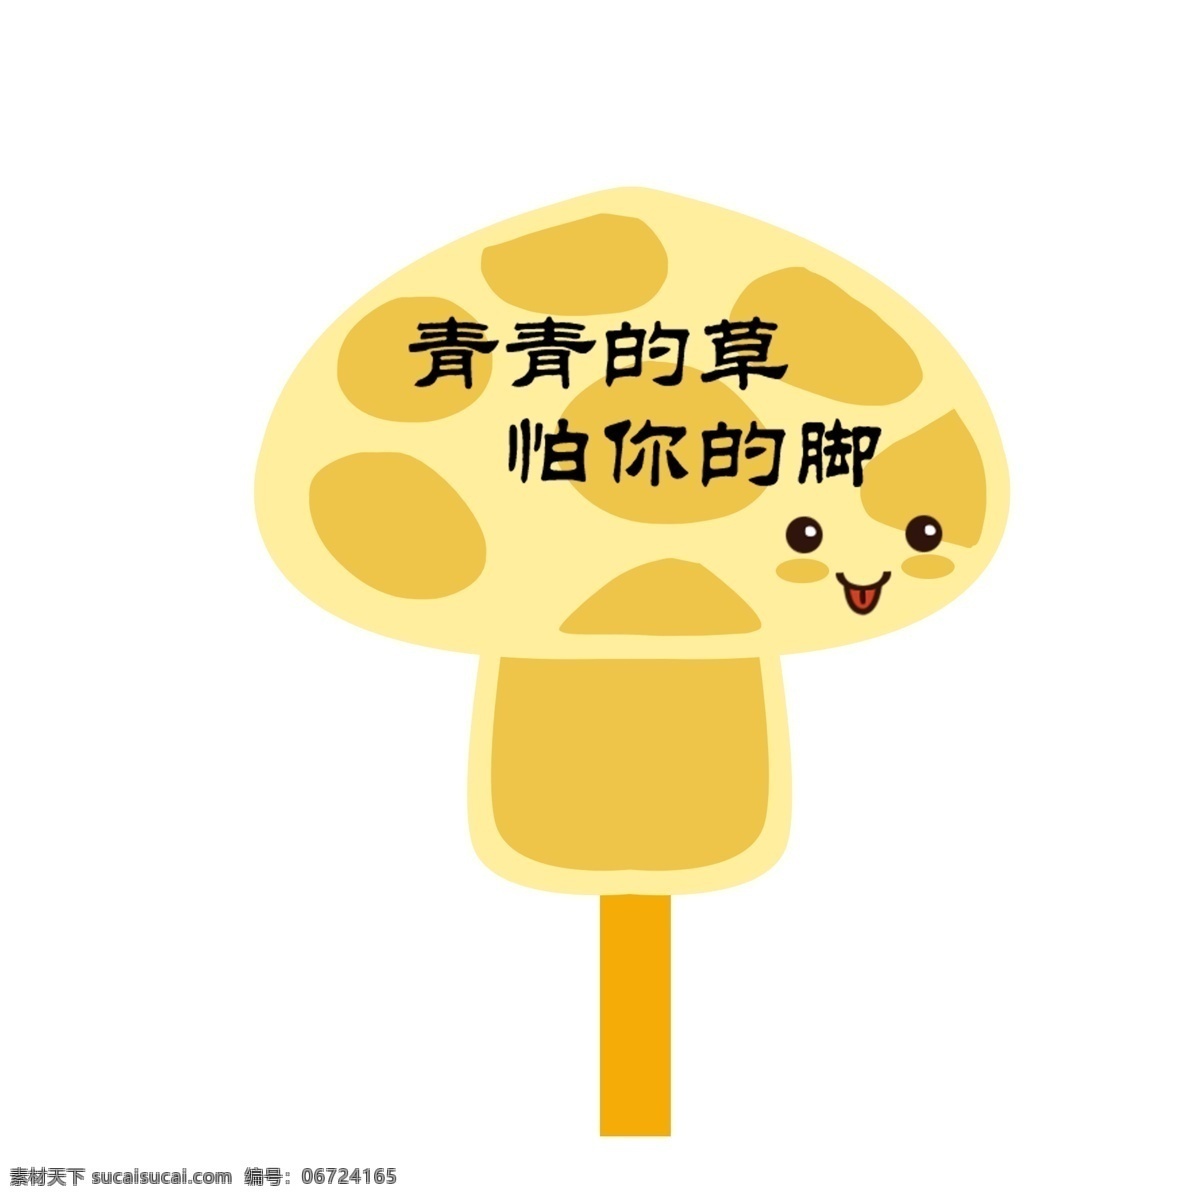 蘑菇 型 爱护 花草 标识 牌 透明 底 黄色 笑脸 警示牌 卡通 简笔 白色 标牌 环保 爱护花草 环境保护